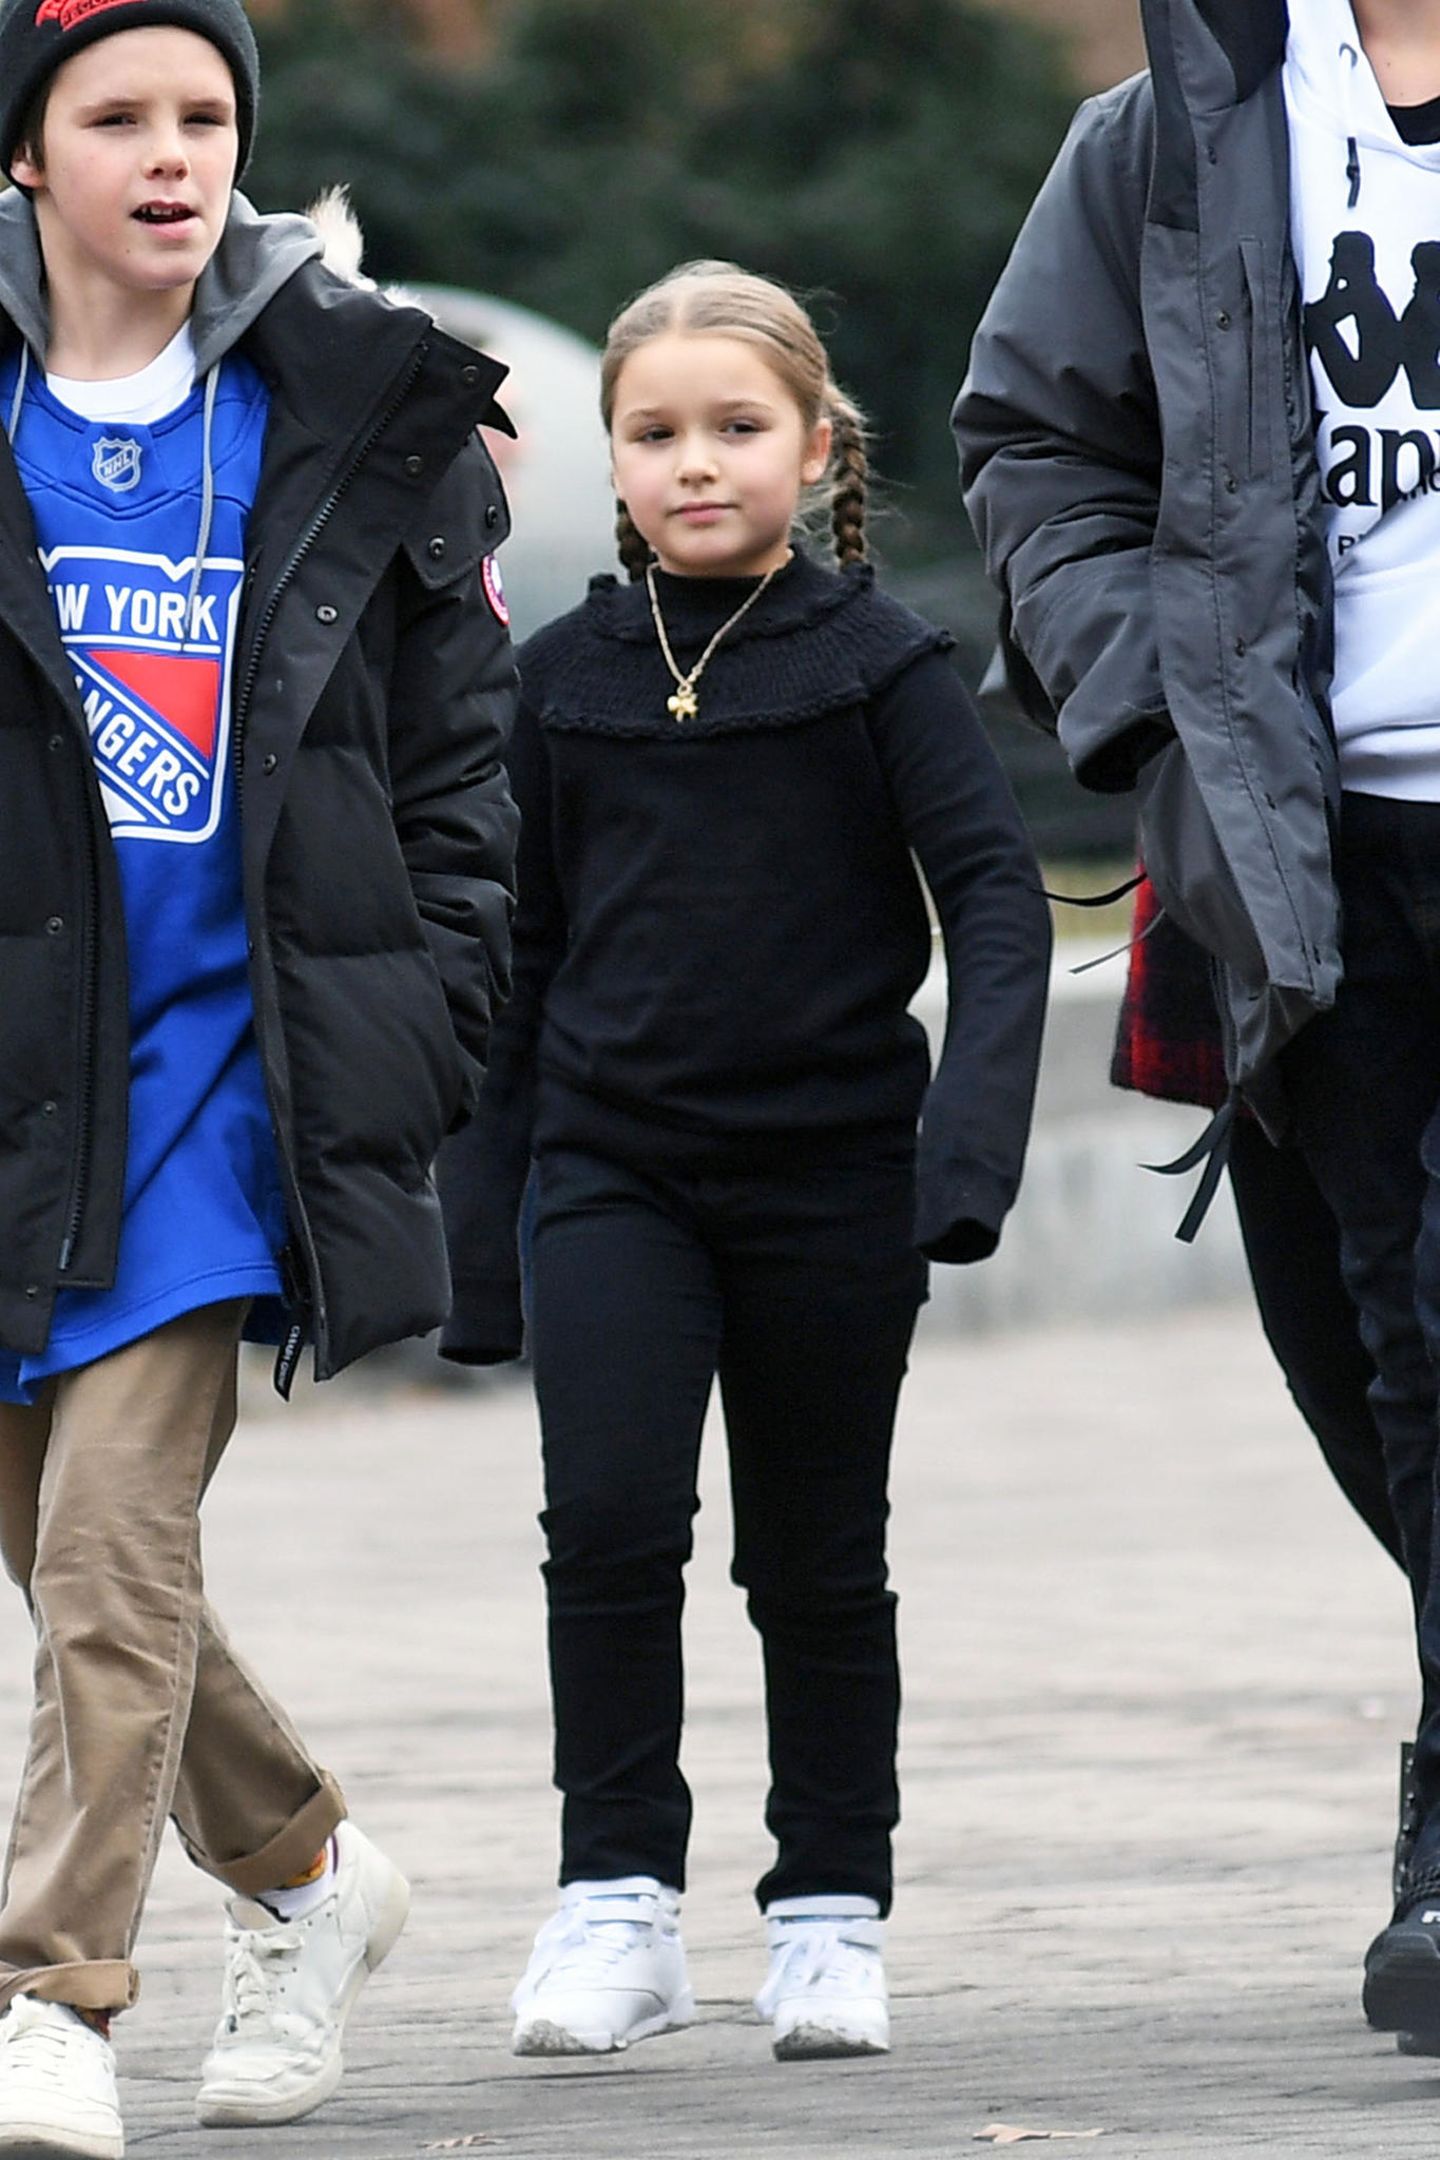 Auf dem Weg zur Eislaufbahn war Harper noch warm genug, um unter dem ihrem Mantel das schwarzes, sportliches Outfit mit einem Hauch von Rüschen zu zeigen.